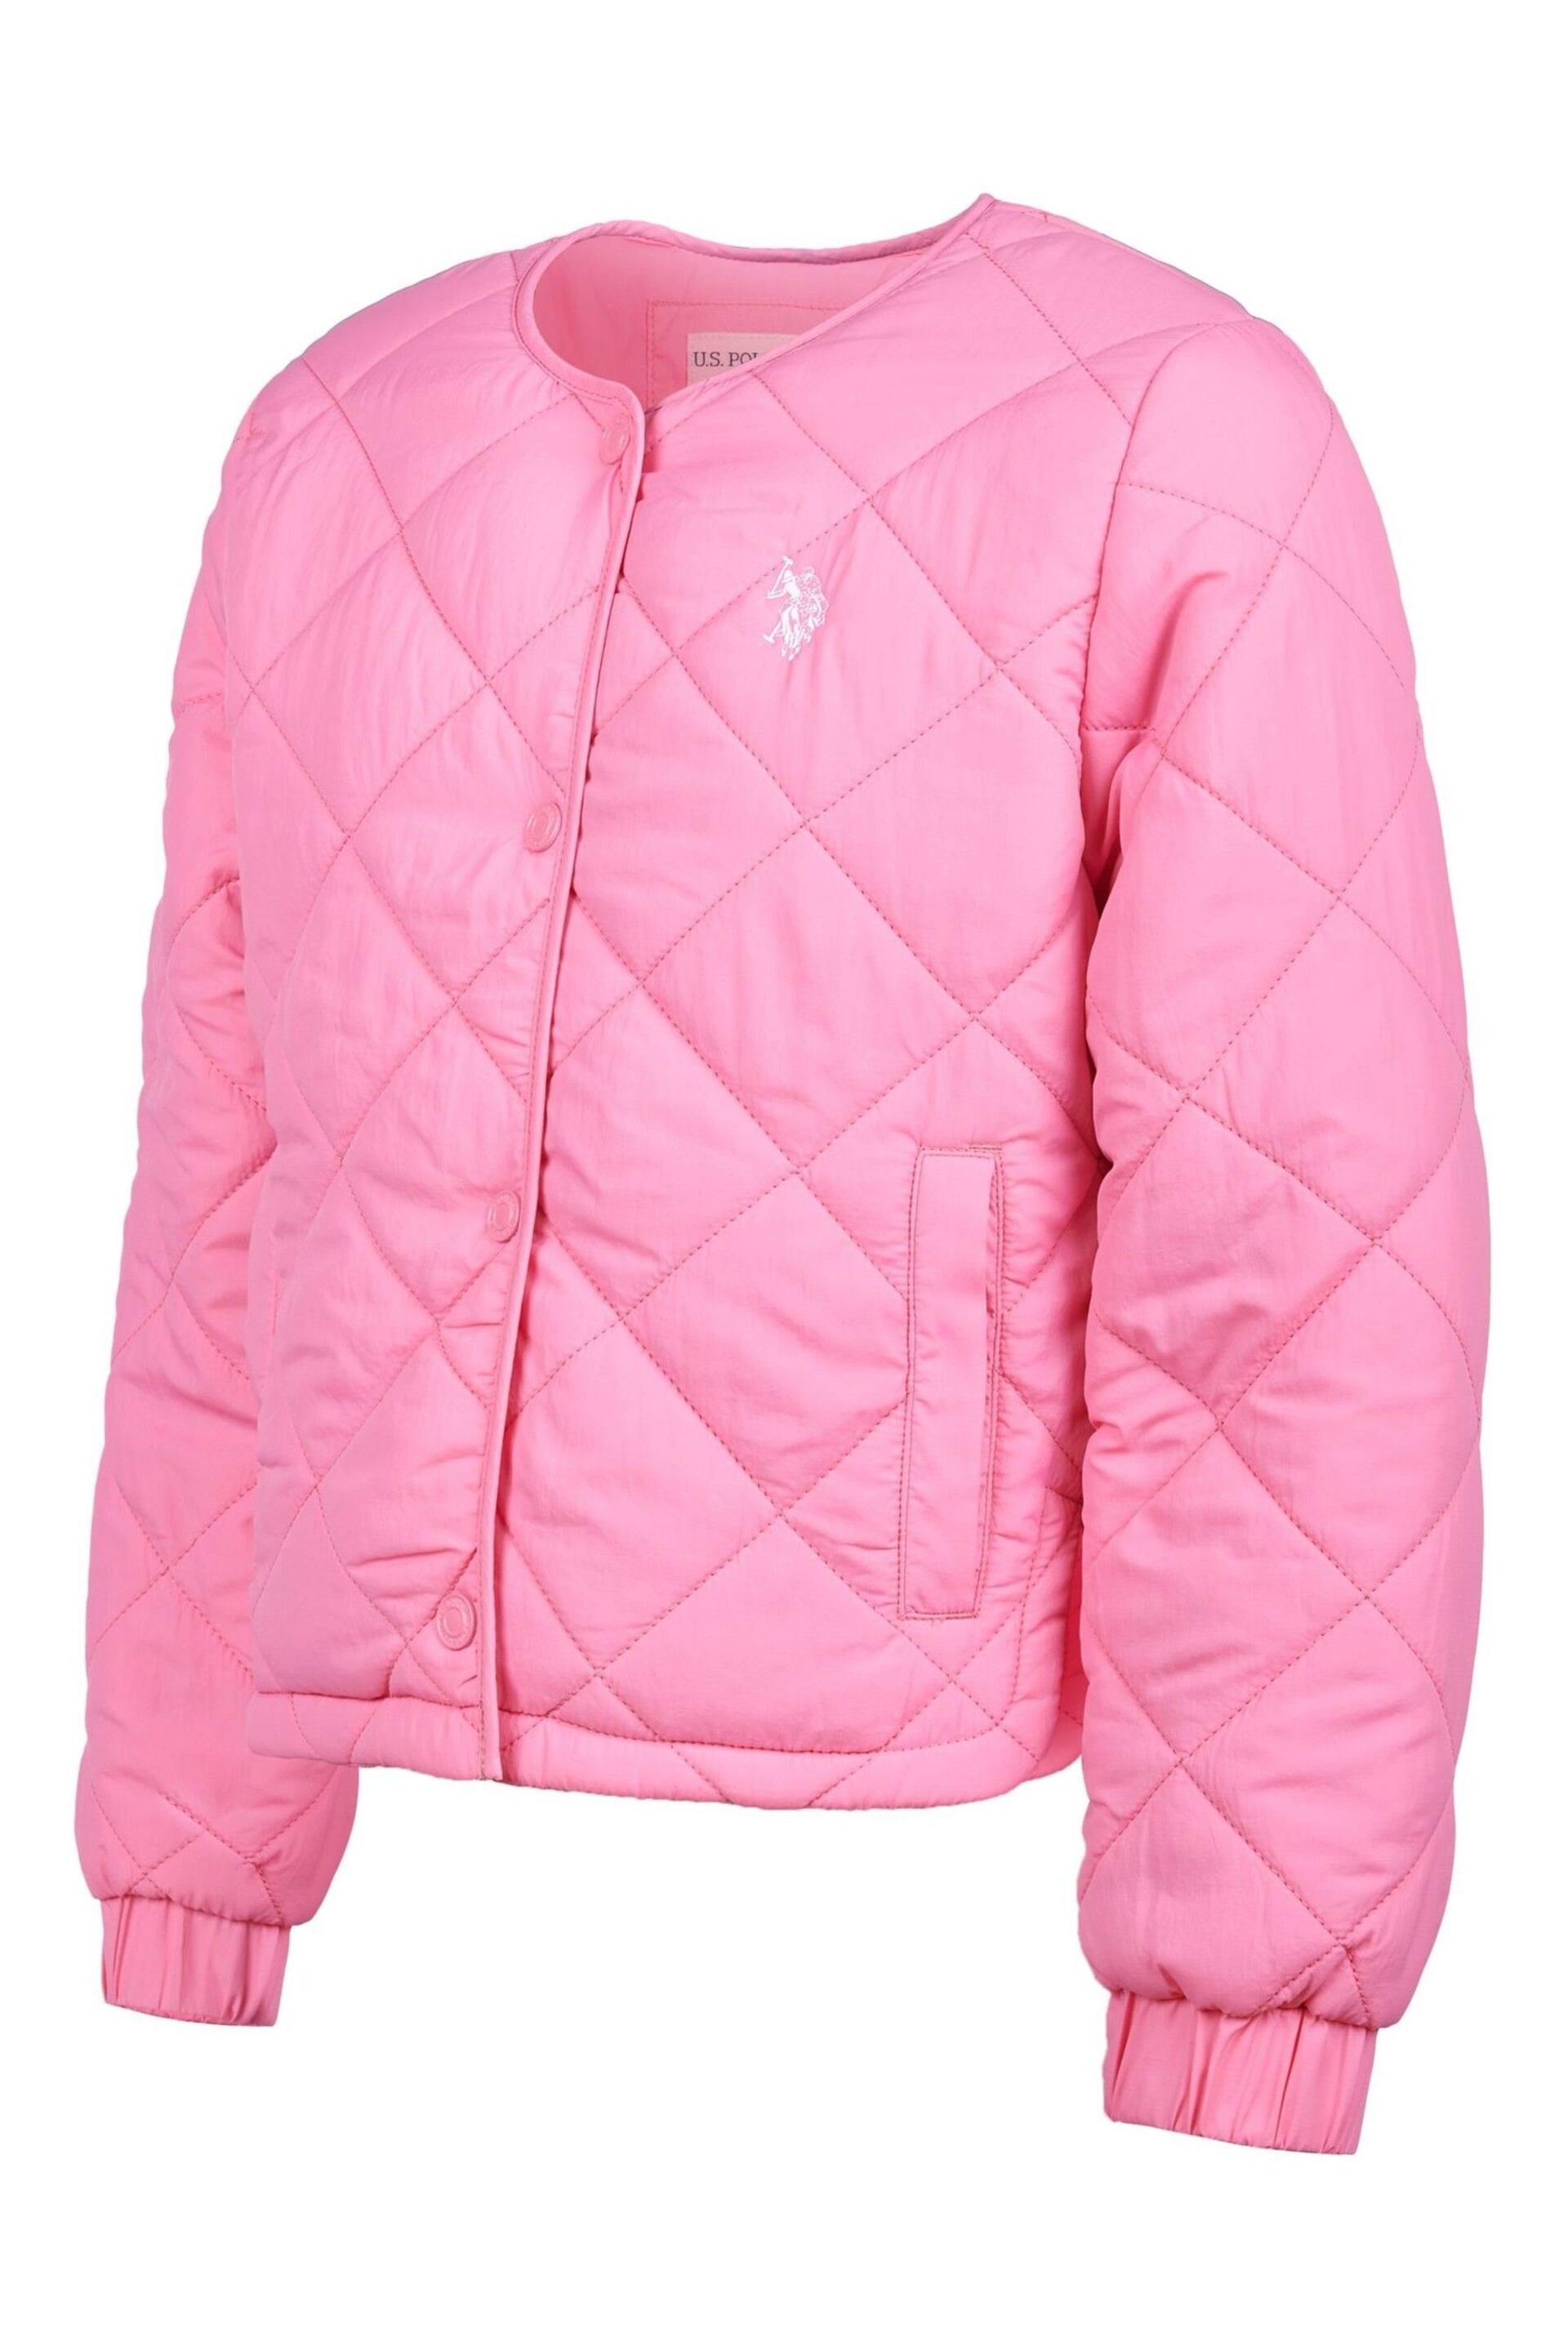 U.S. Polo Assn. Girls Pink Lightweight Puffer Jacket - Image 3 of 5